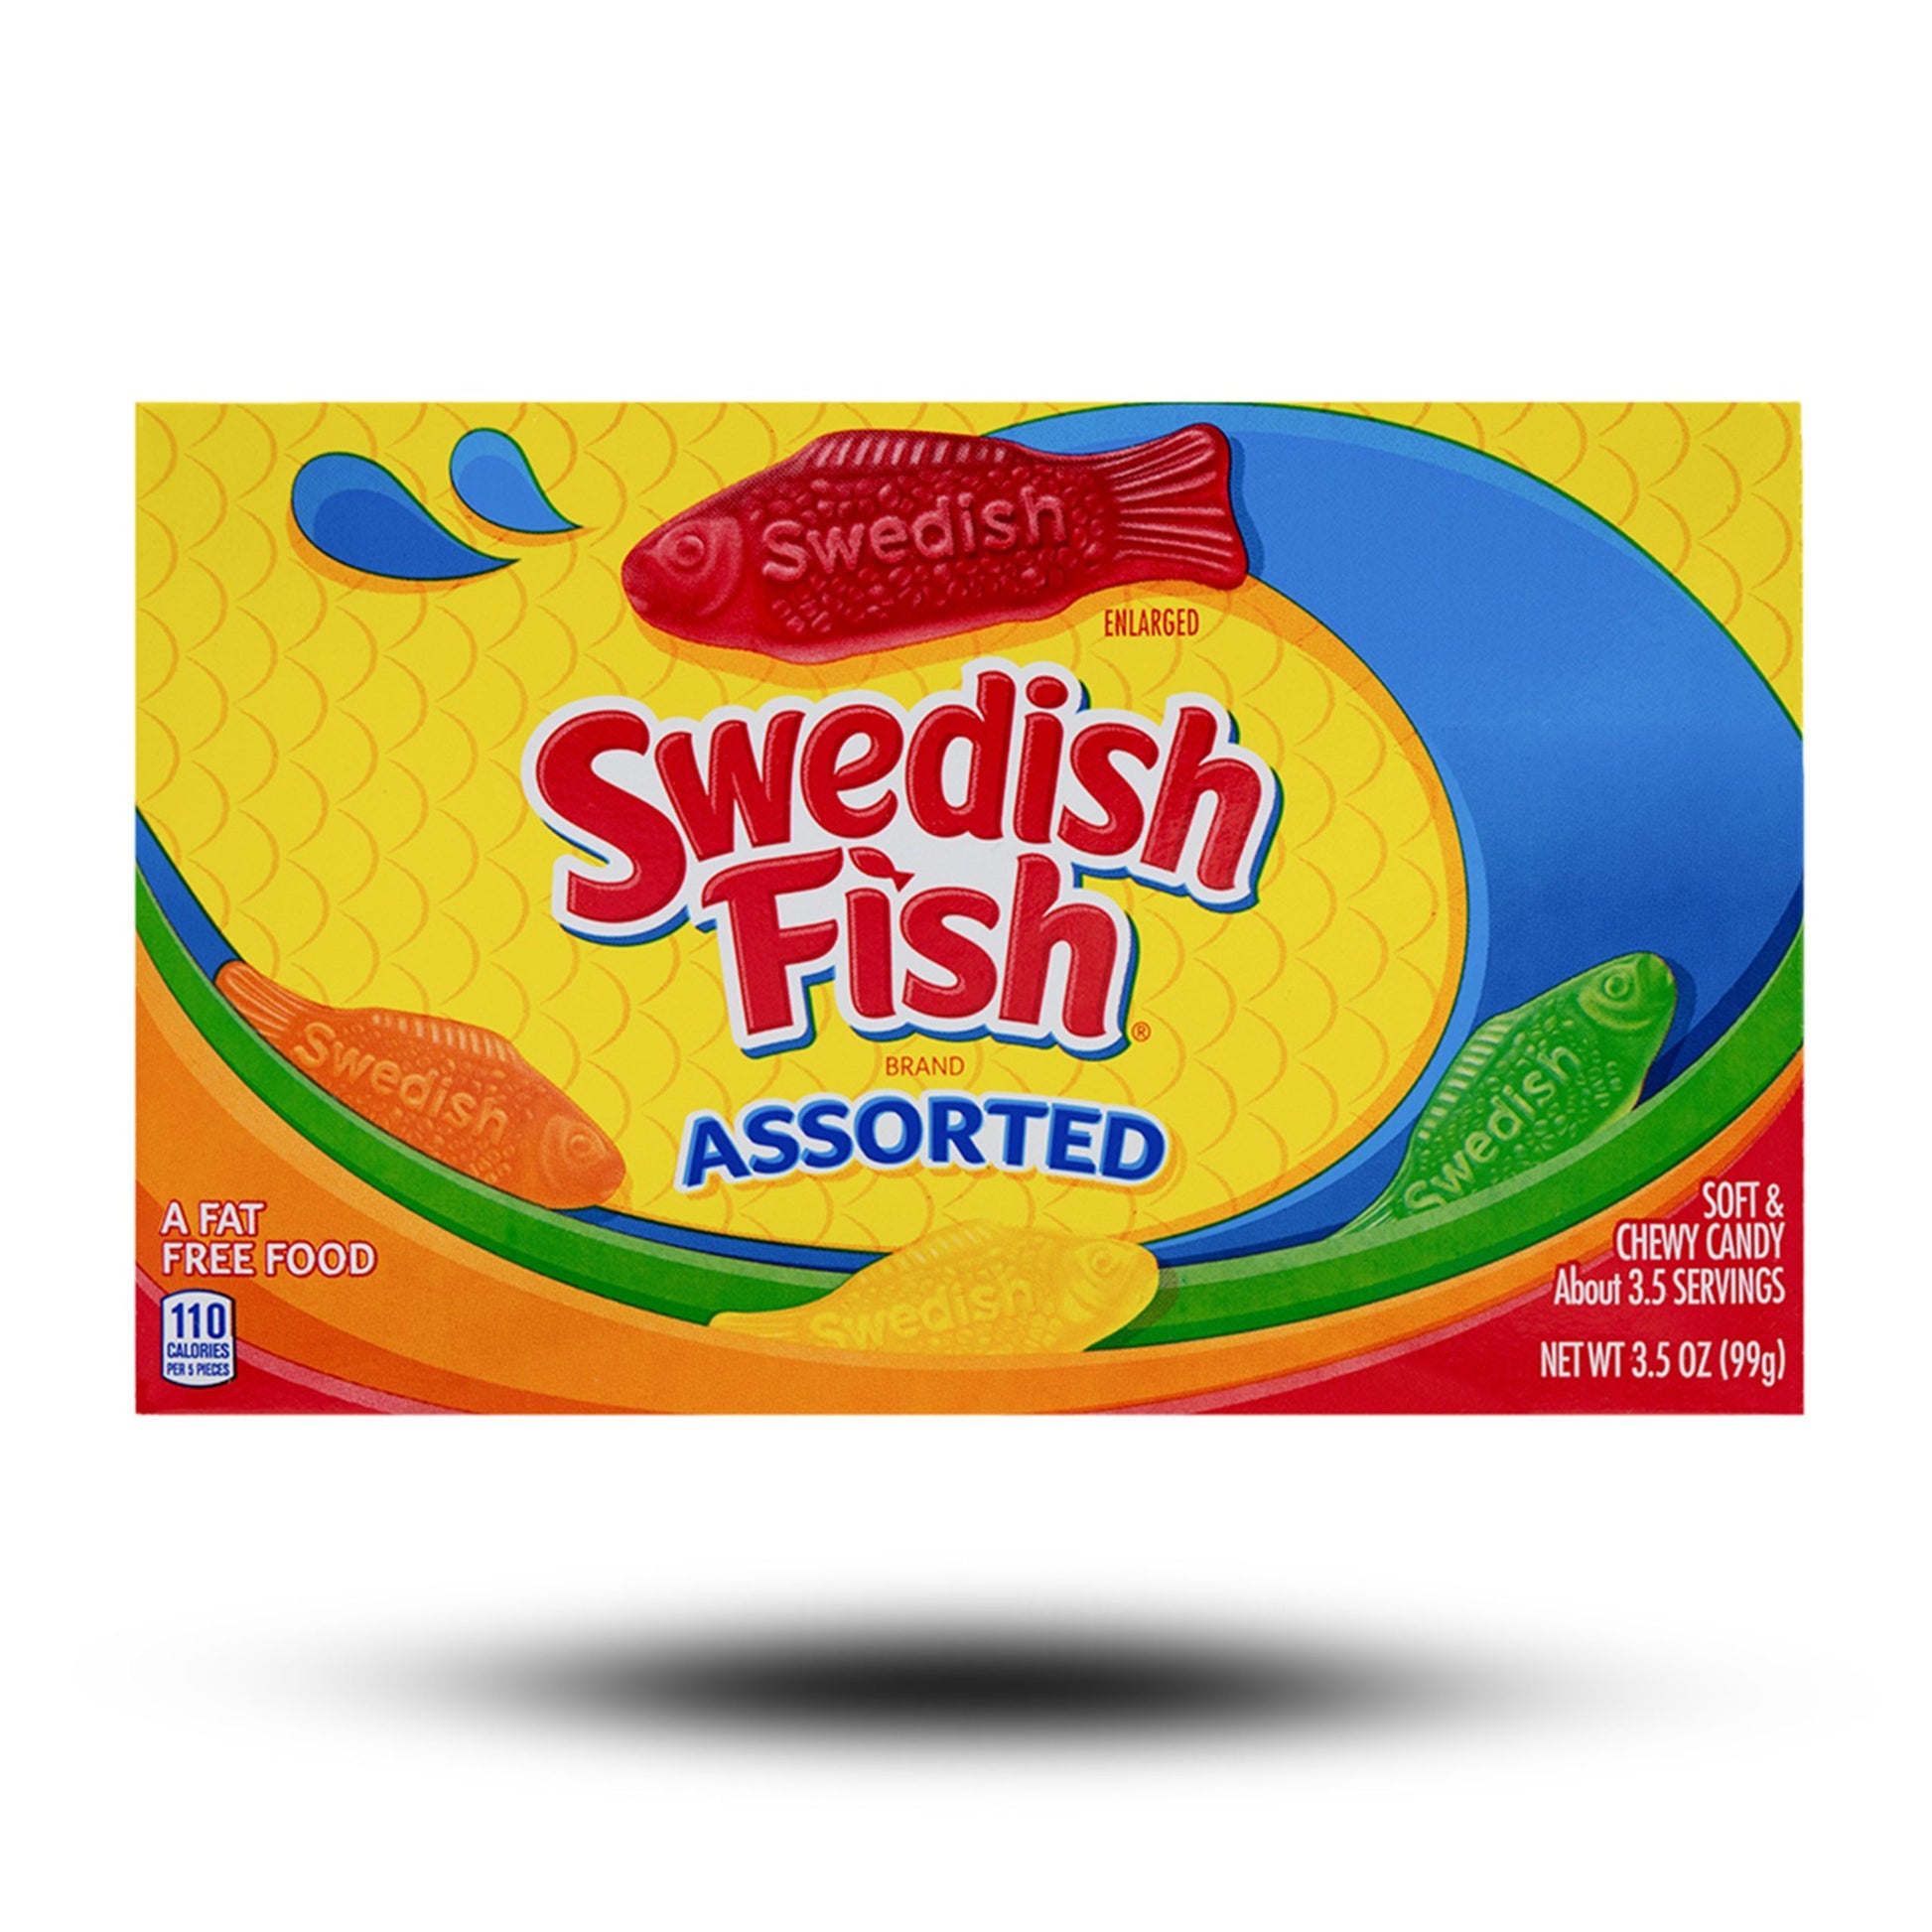 Süßigkeiten aus aller Welt, internationale Süßigkeiten, europäische Süßigkeiten, Süßigkeiten bestellen, Sweets online, Swedish Fish Assorted